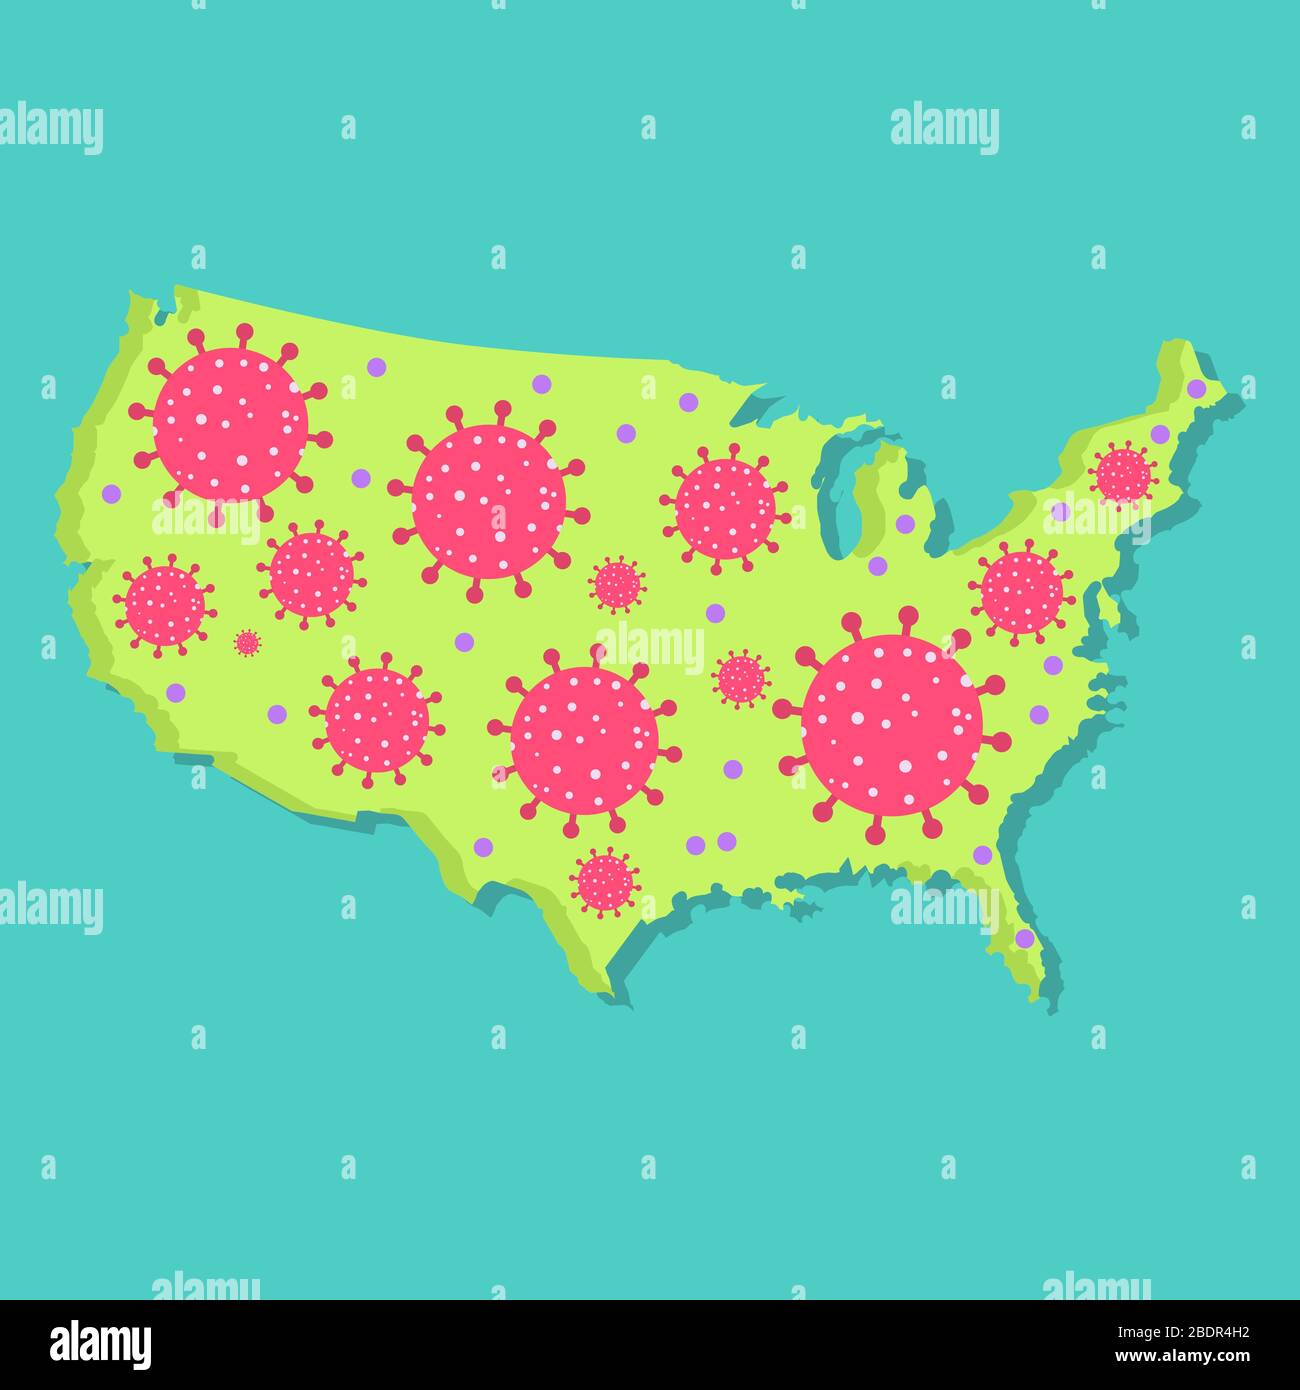 Karte der Vereinigten Staaten mit Virus. Coronavirus-Epidemie im amerikanischen Land. Konzeptionell. Stock Vektor